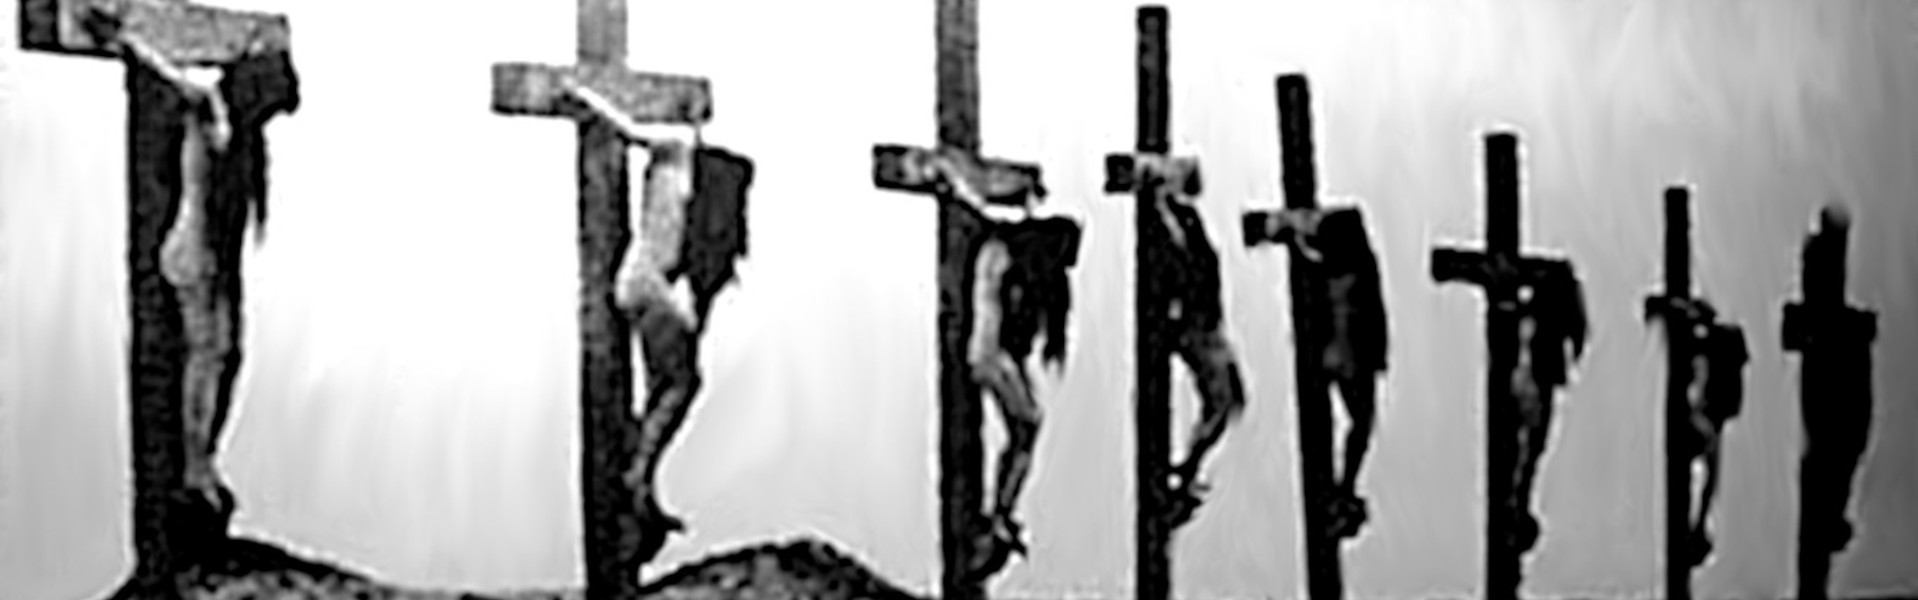 a row of crucified amenian women